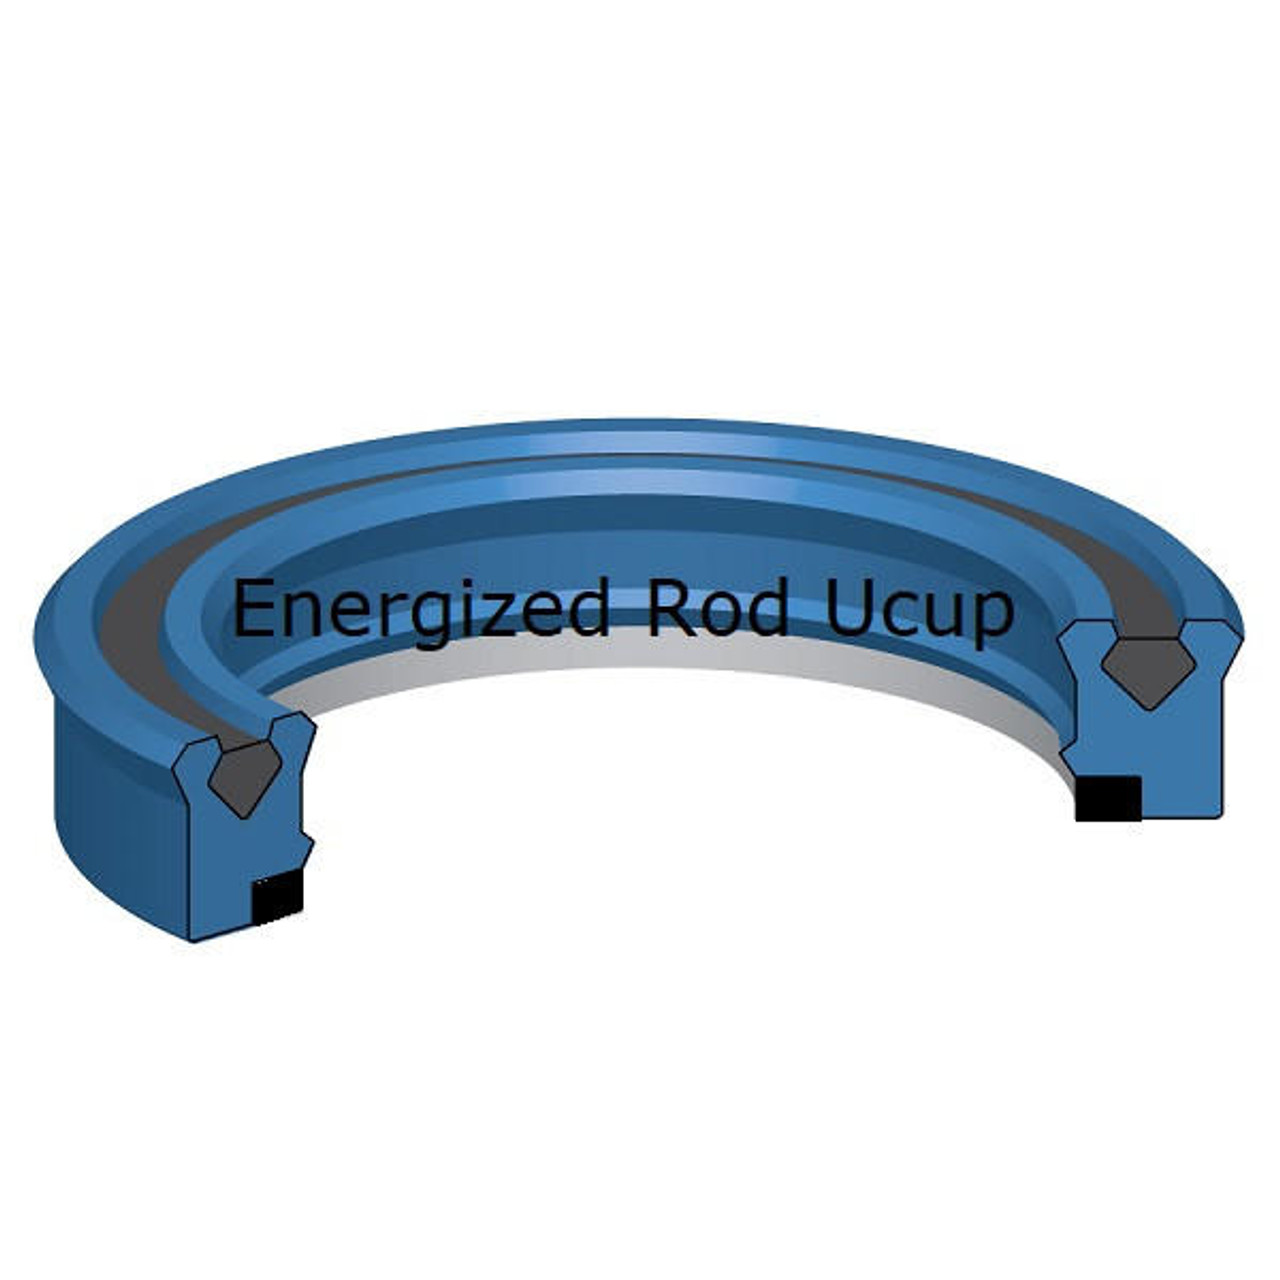 Energized Rod U cup 110mm ID x 130mm OD x 14.6mm Seal  10,000 PSI